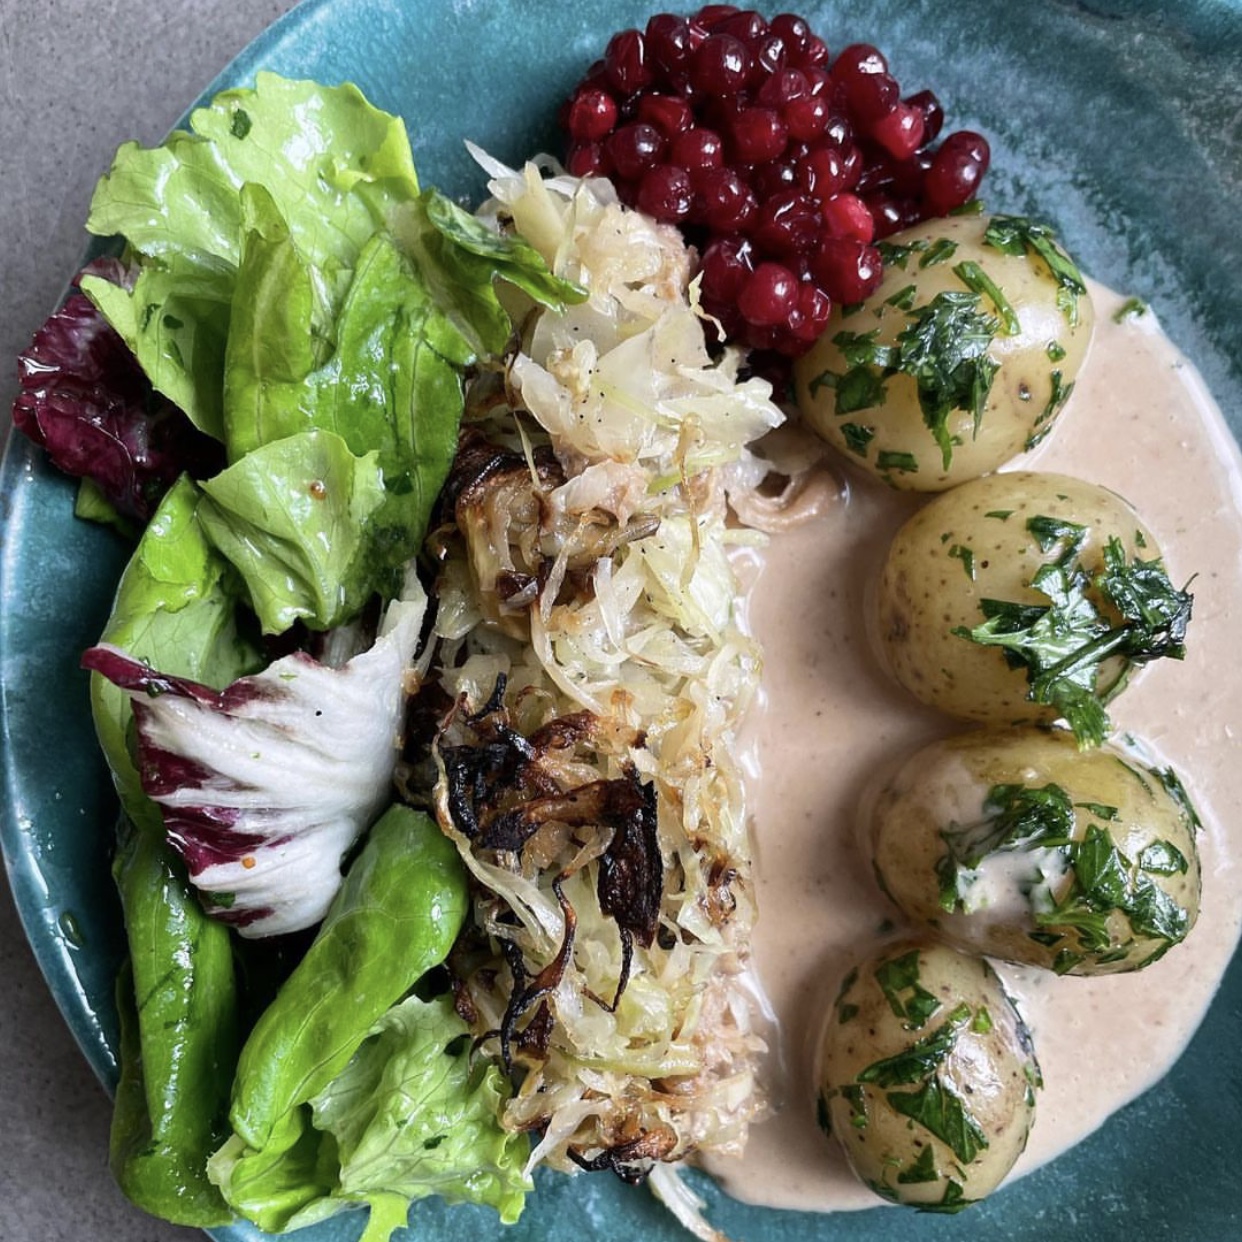 Rätt från en lunch, Bild från Spills Instagram. Följ för mumsiga recept!